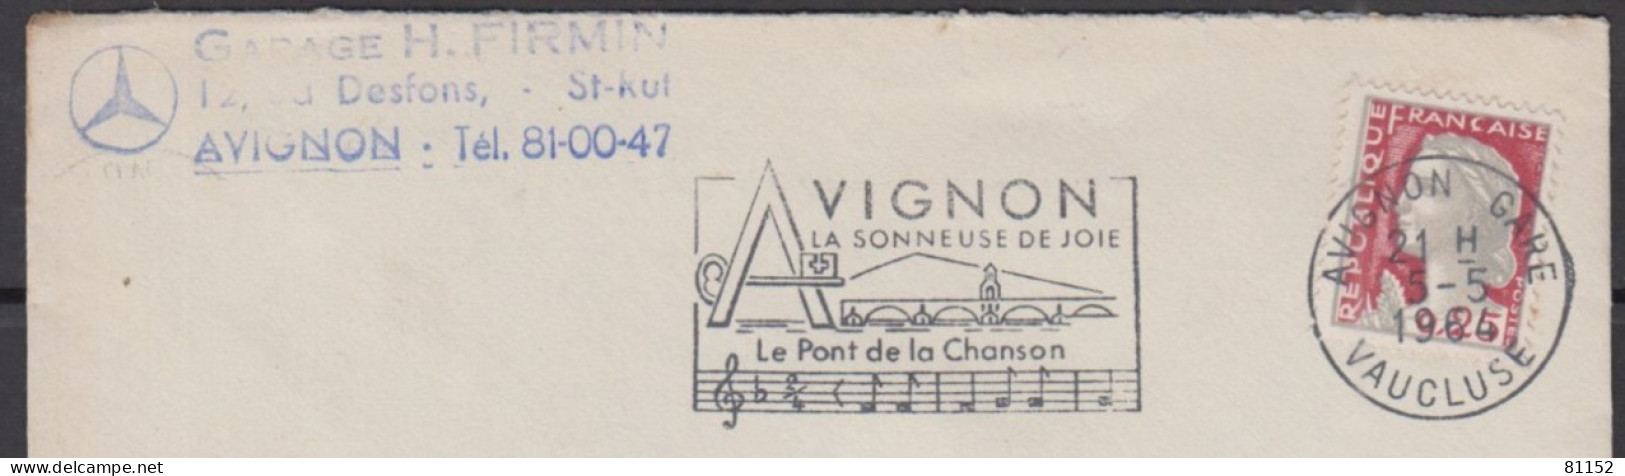 Mne De DECARIS 25c  + Sécap   Sur Lettre Pub " Blason MERCEDES " De  AVIGNON  Le 5 5 1964  Pour AVIGNON - 1960 Marianne Of Decaris